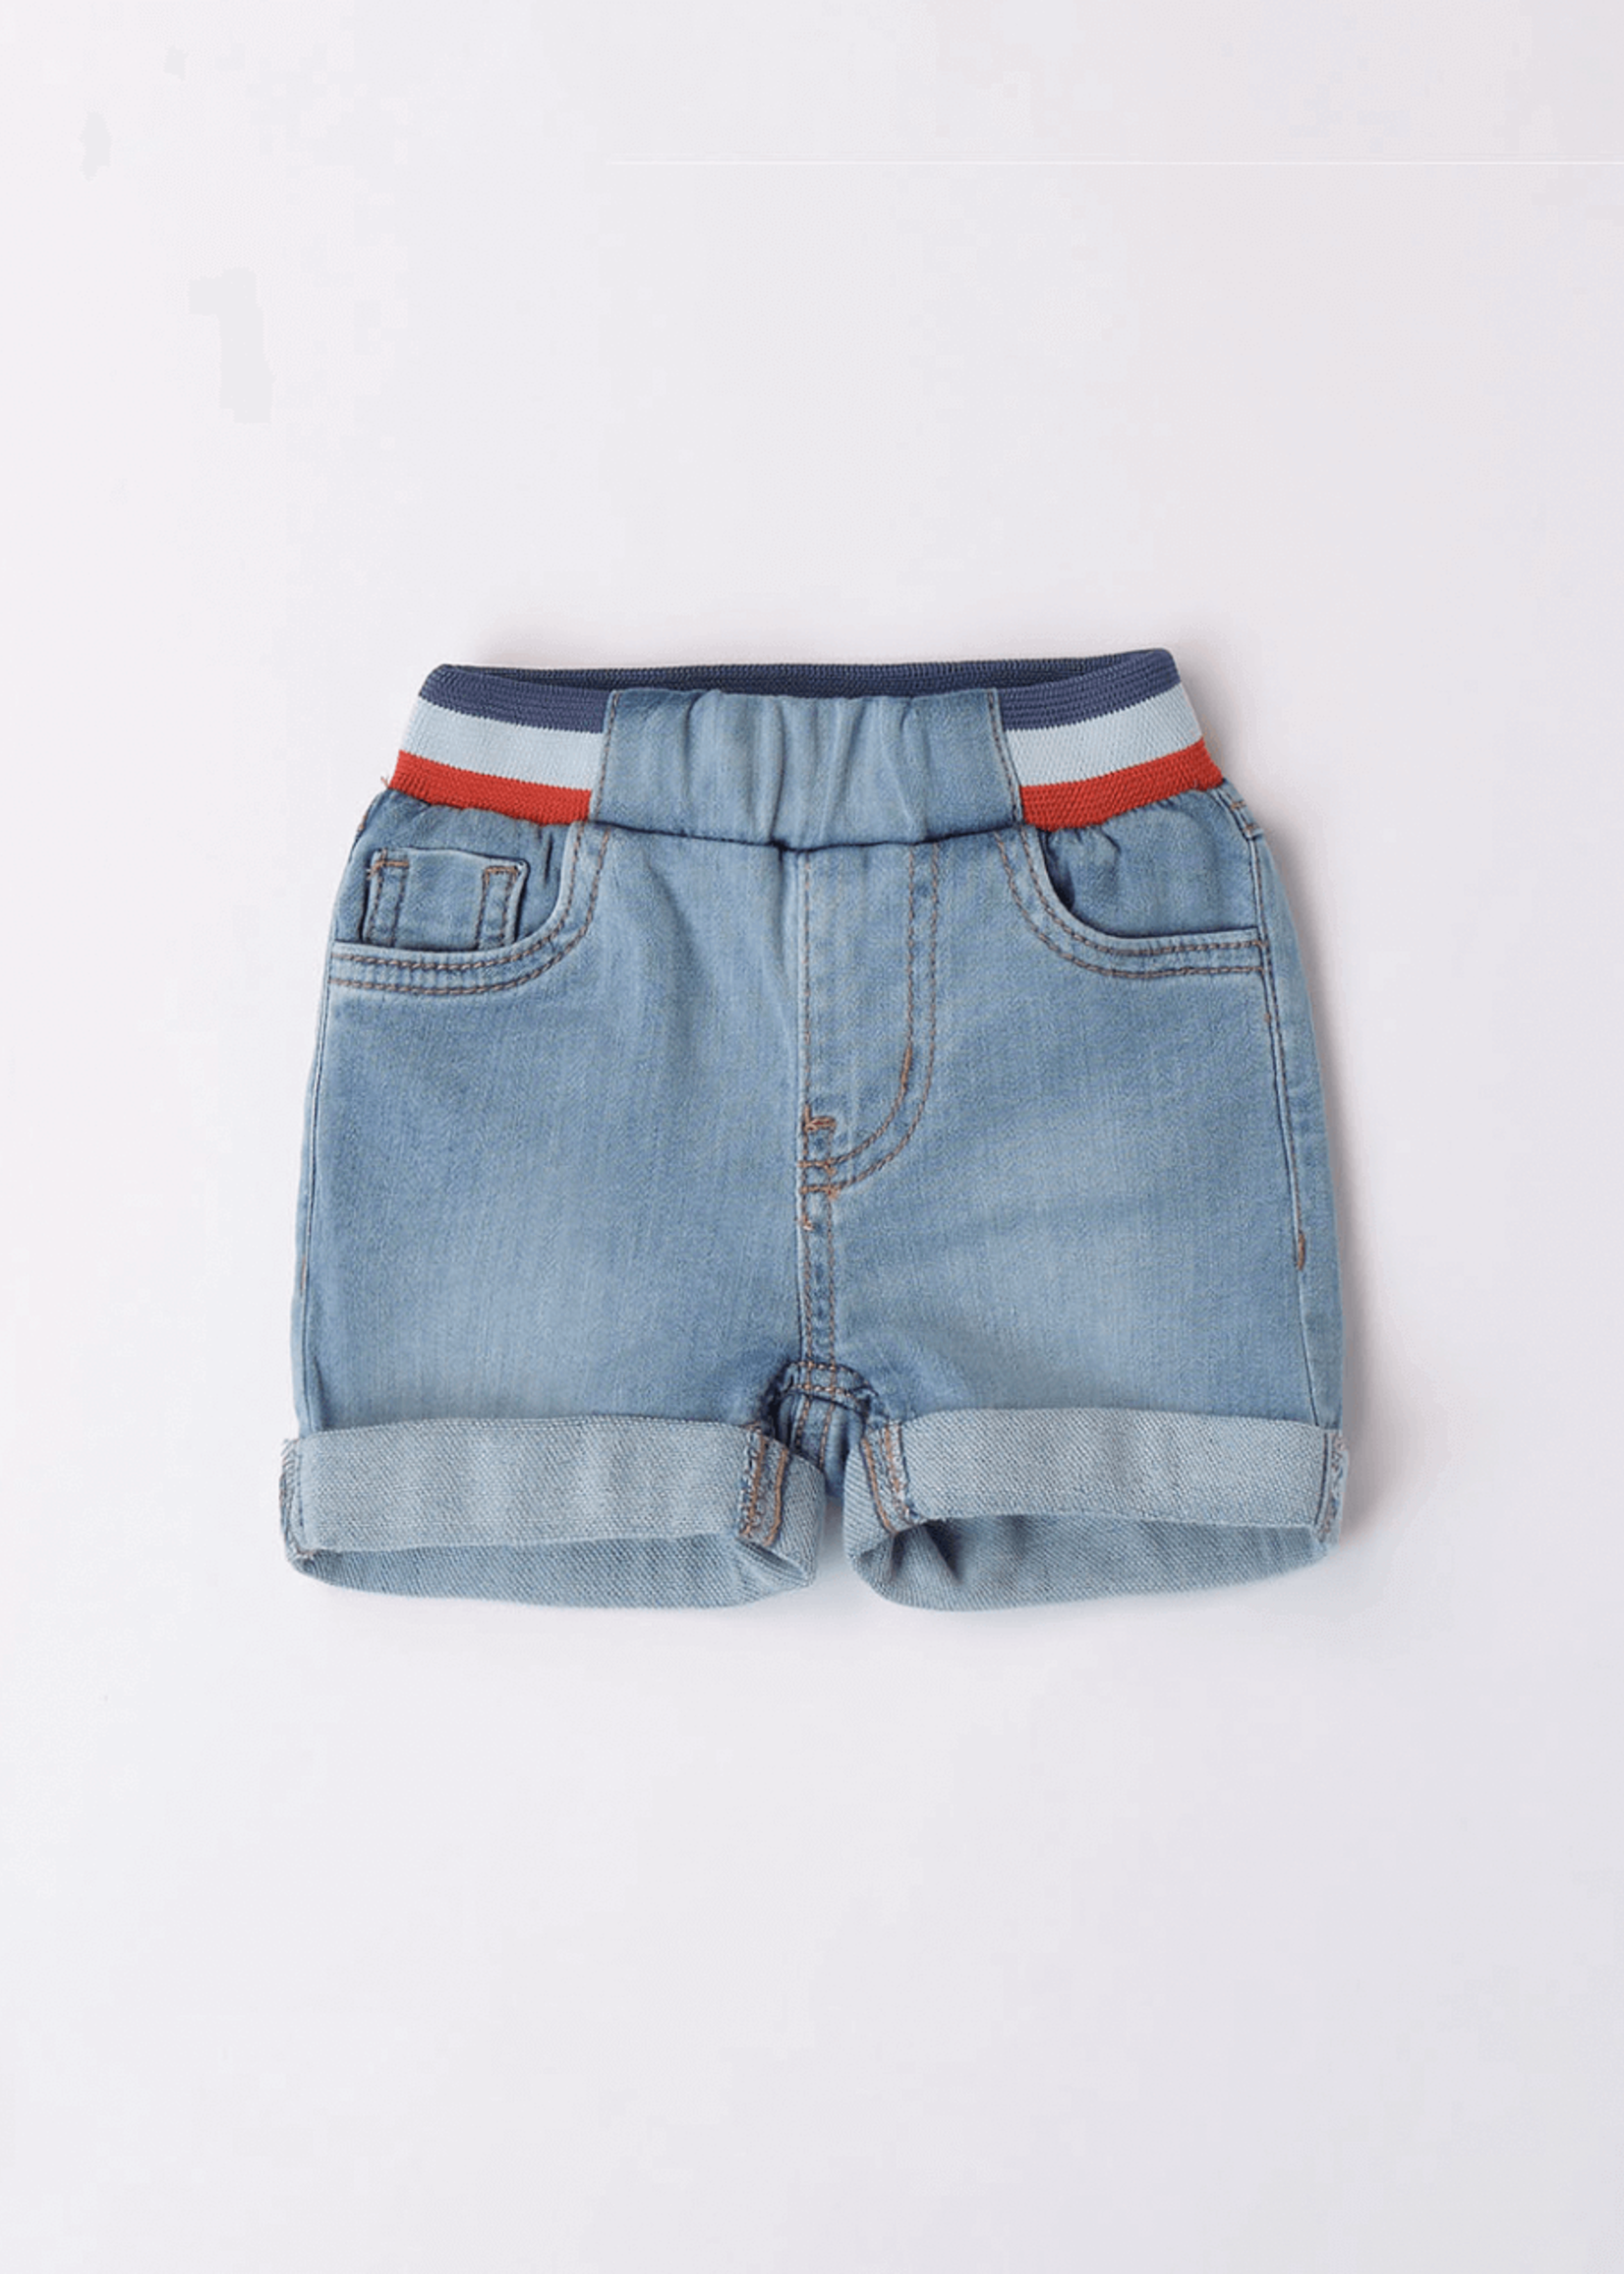 Minibanda Baby Denim Shorts